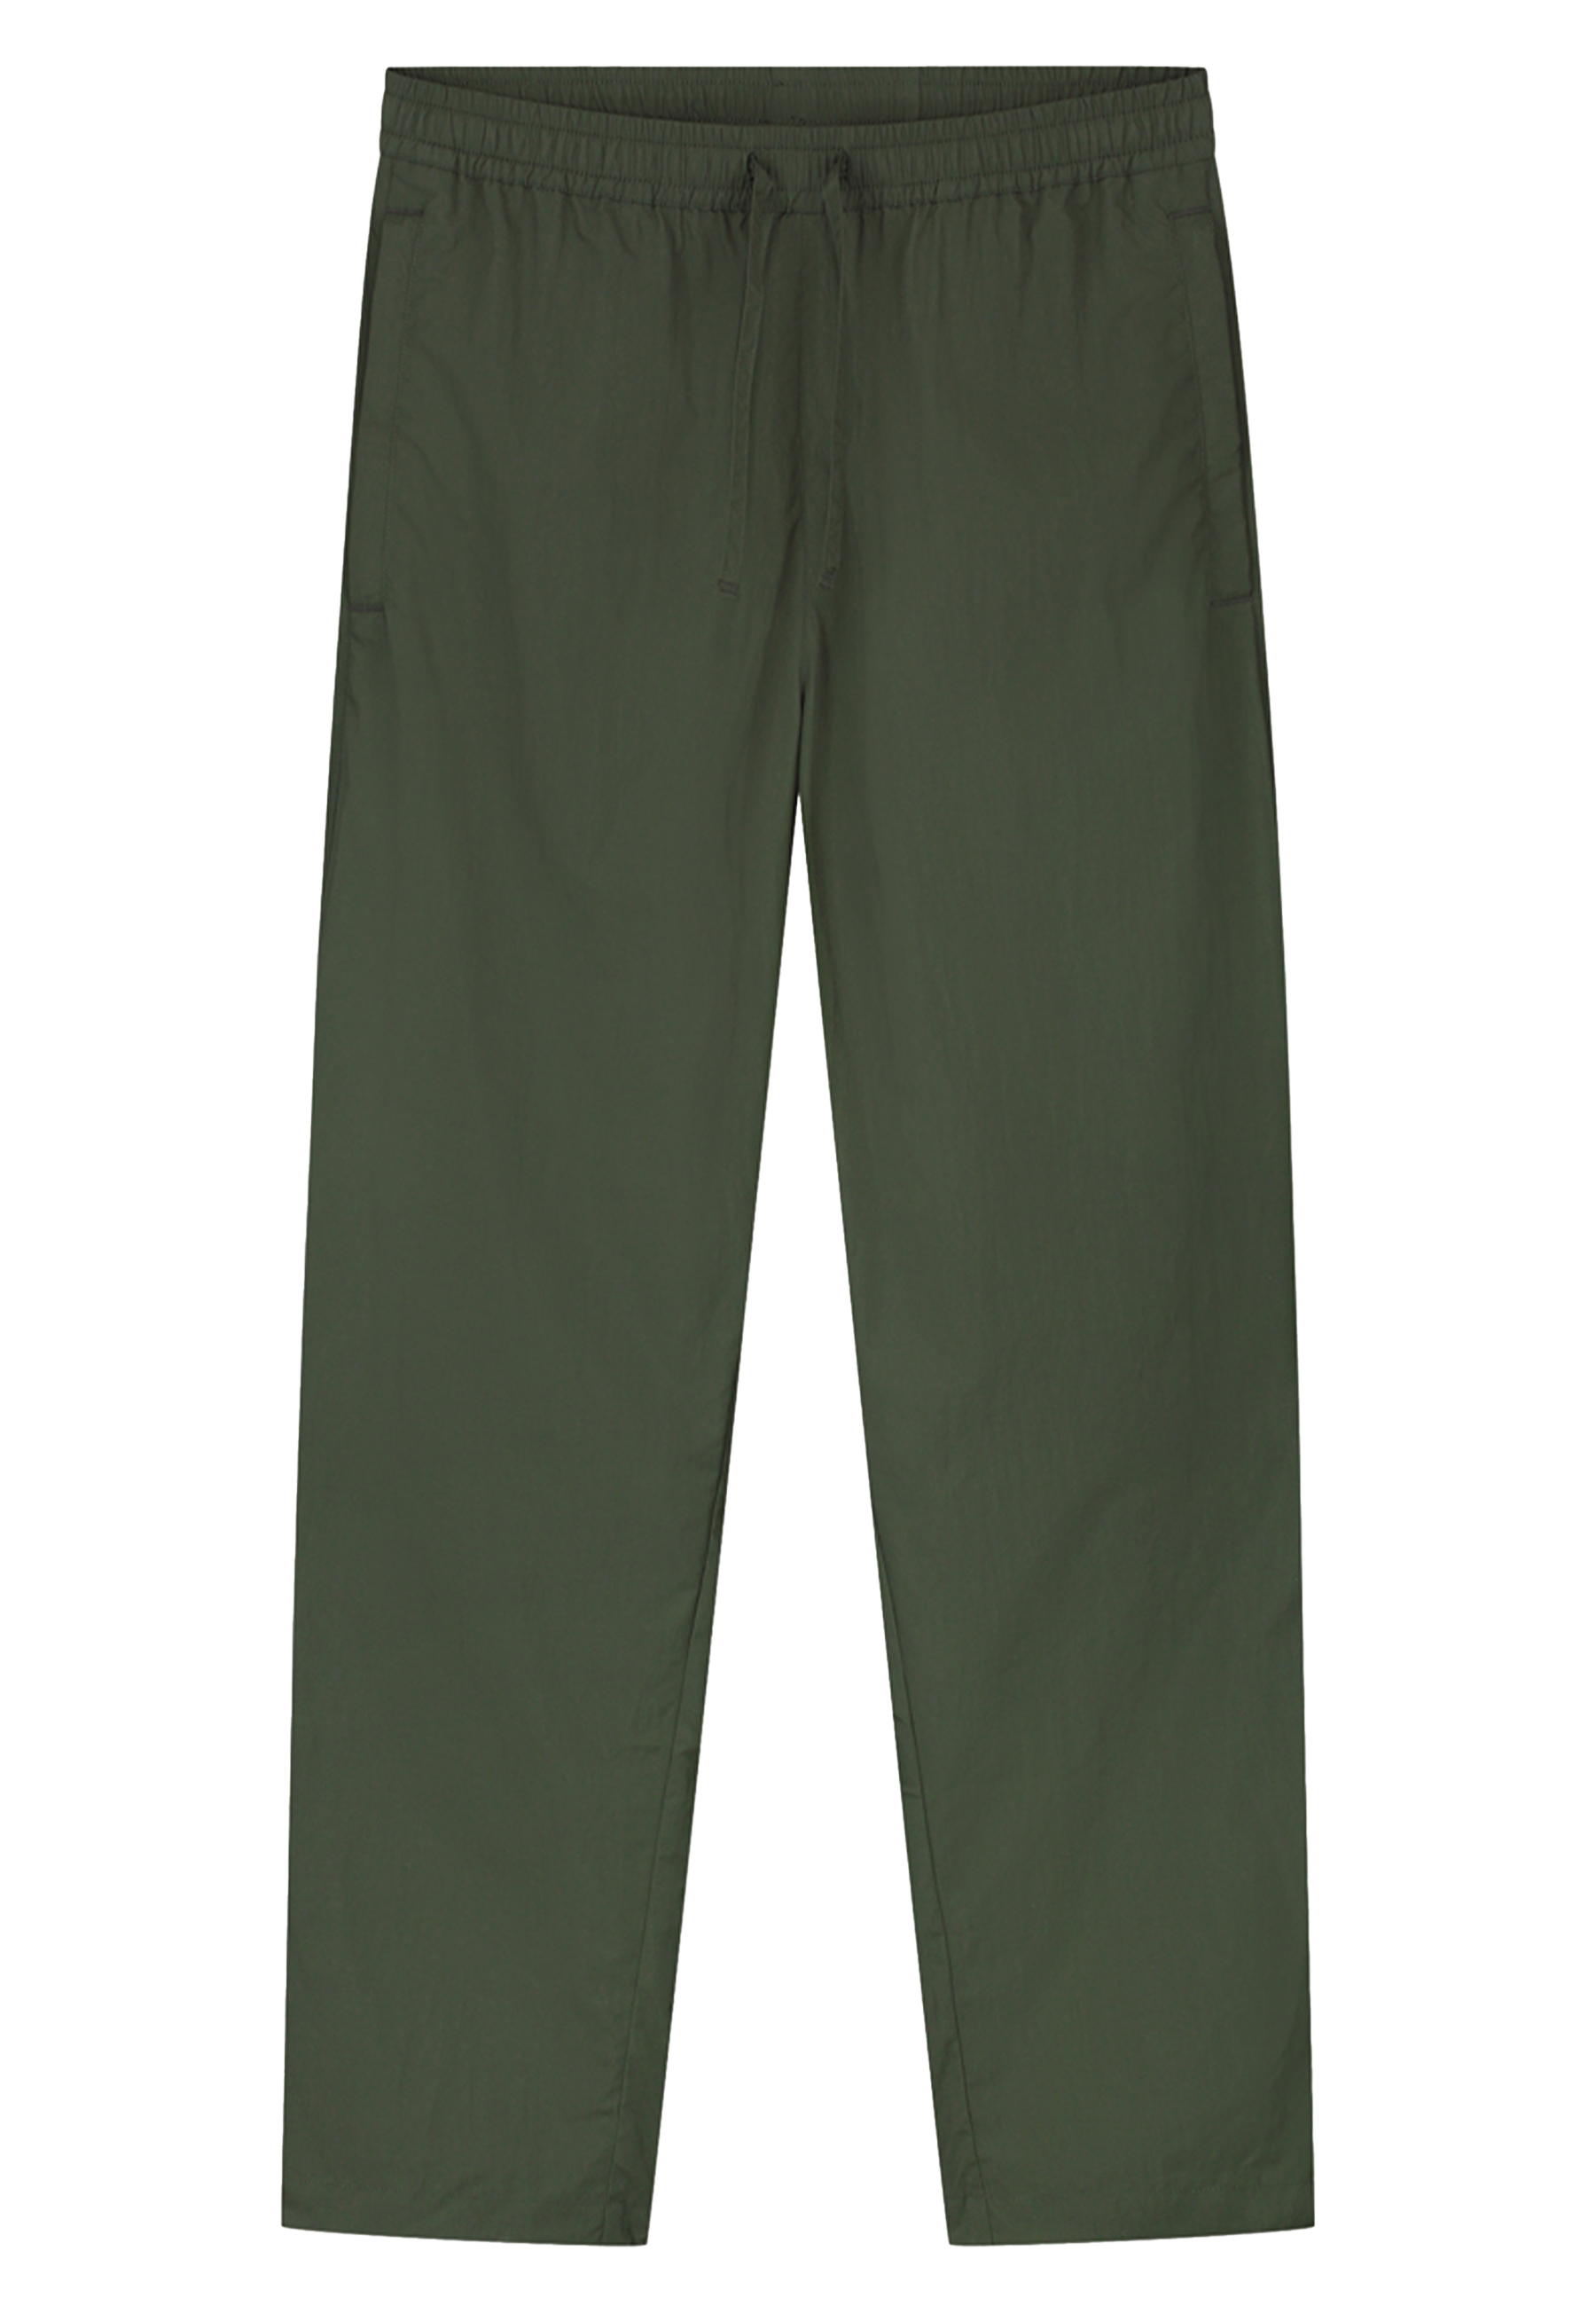 Broek Groen Crinkle nylon track pantalons groen